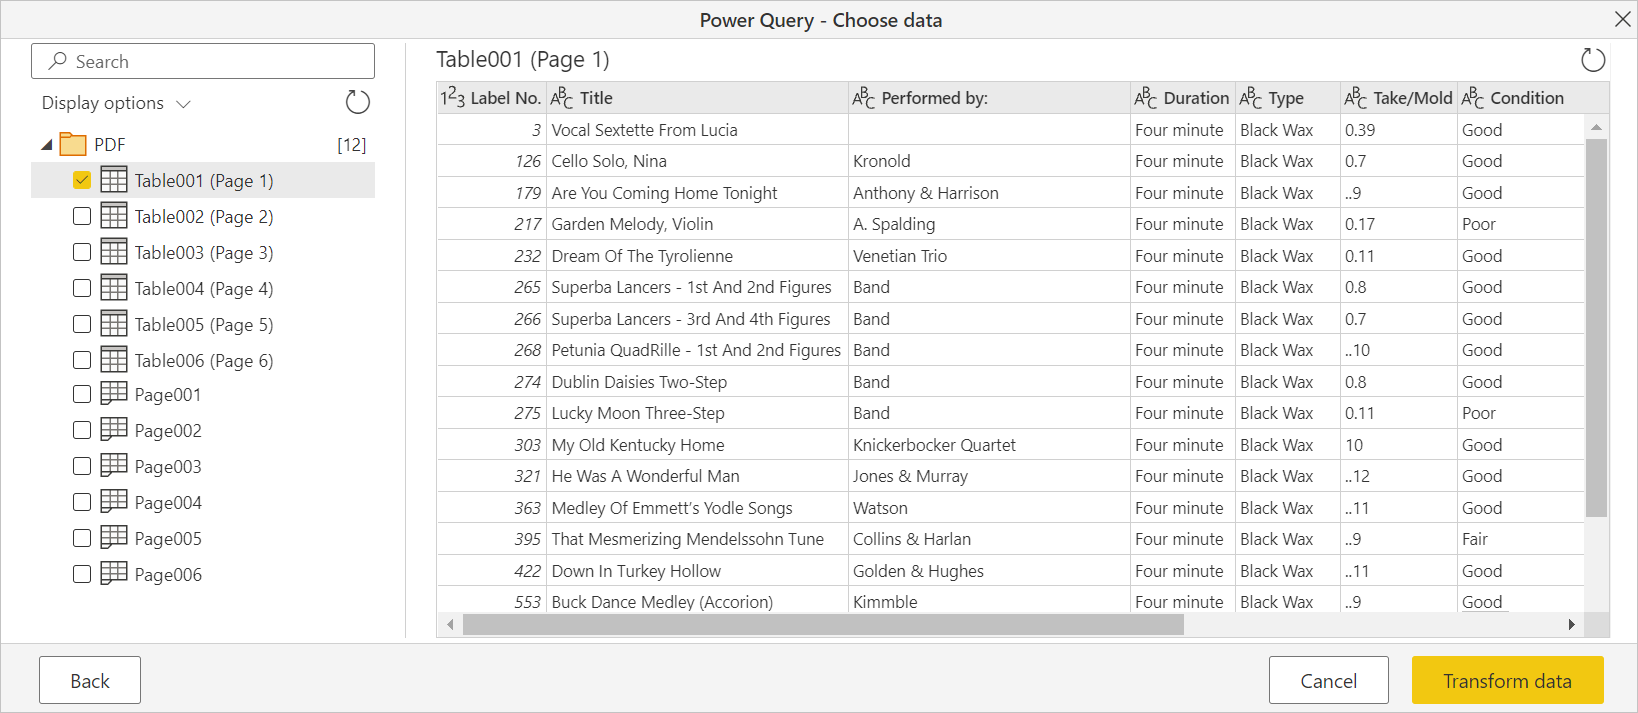 Το αρχείο PDF έχει εισαχθεί στην ηλεκτρονική περιήγηση του Power Query.